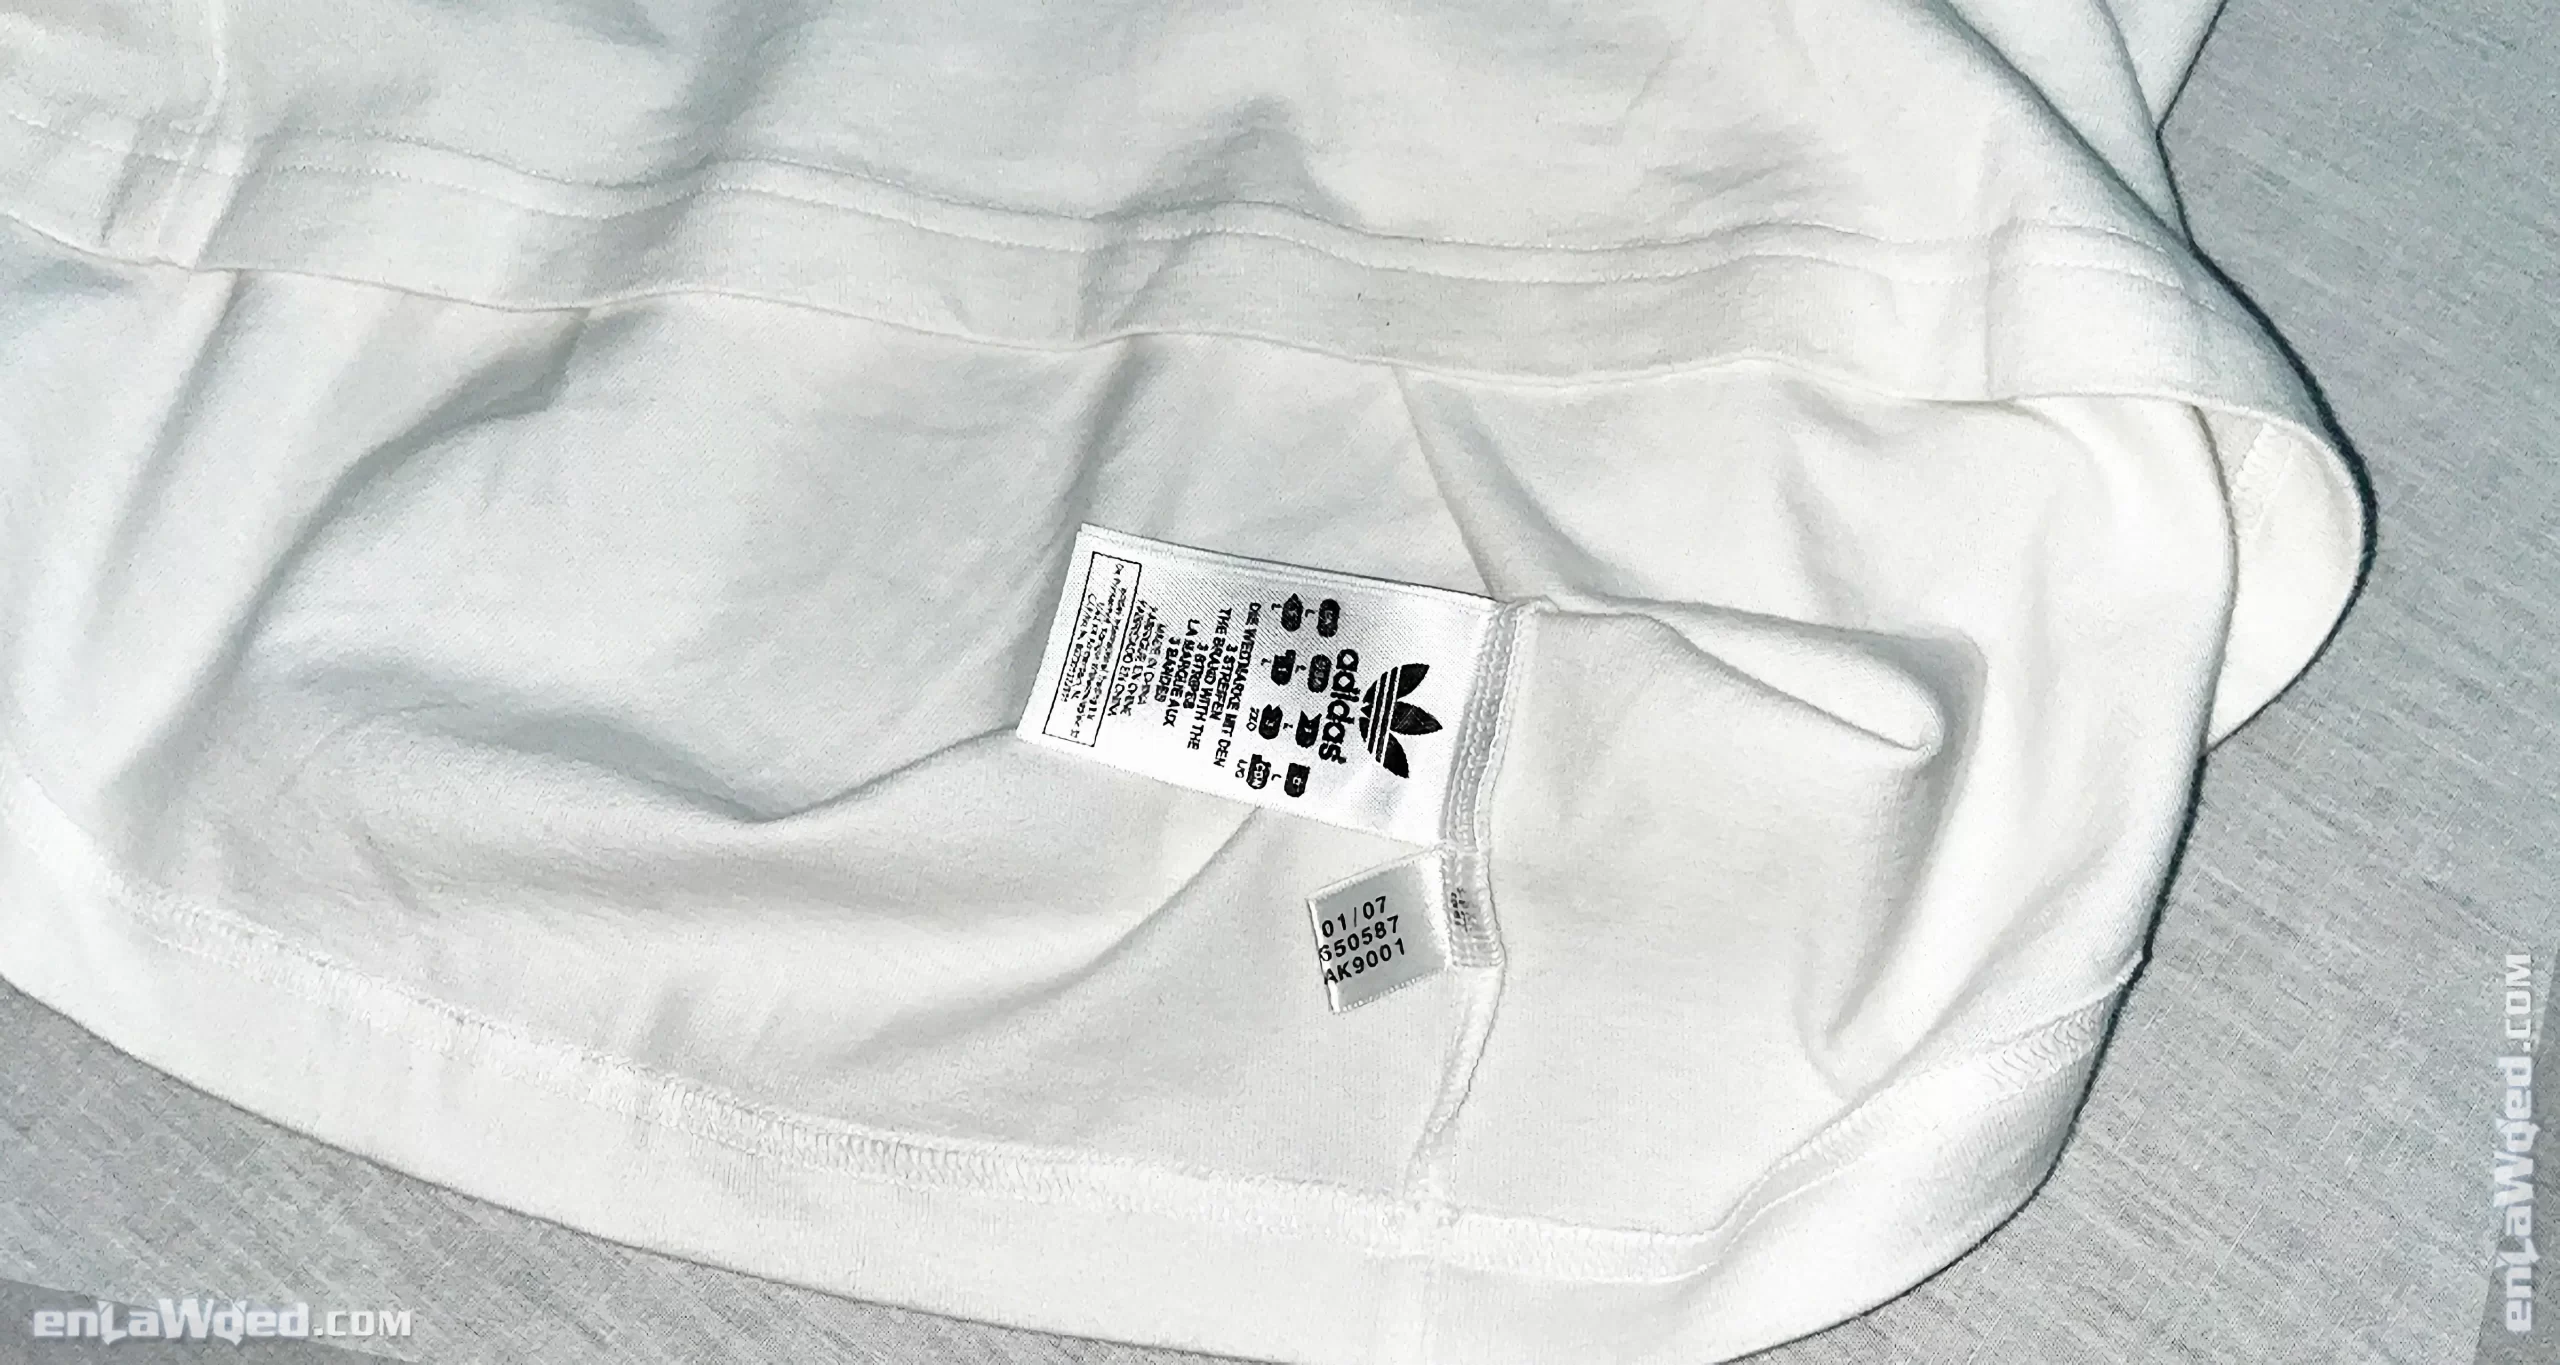 Men’s 2007 Ibiza T-Shirt by Adidas Originals: Ignite (EnLawded.com file #lmc5p56q57mi79a52yt)